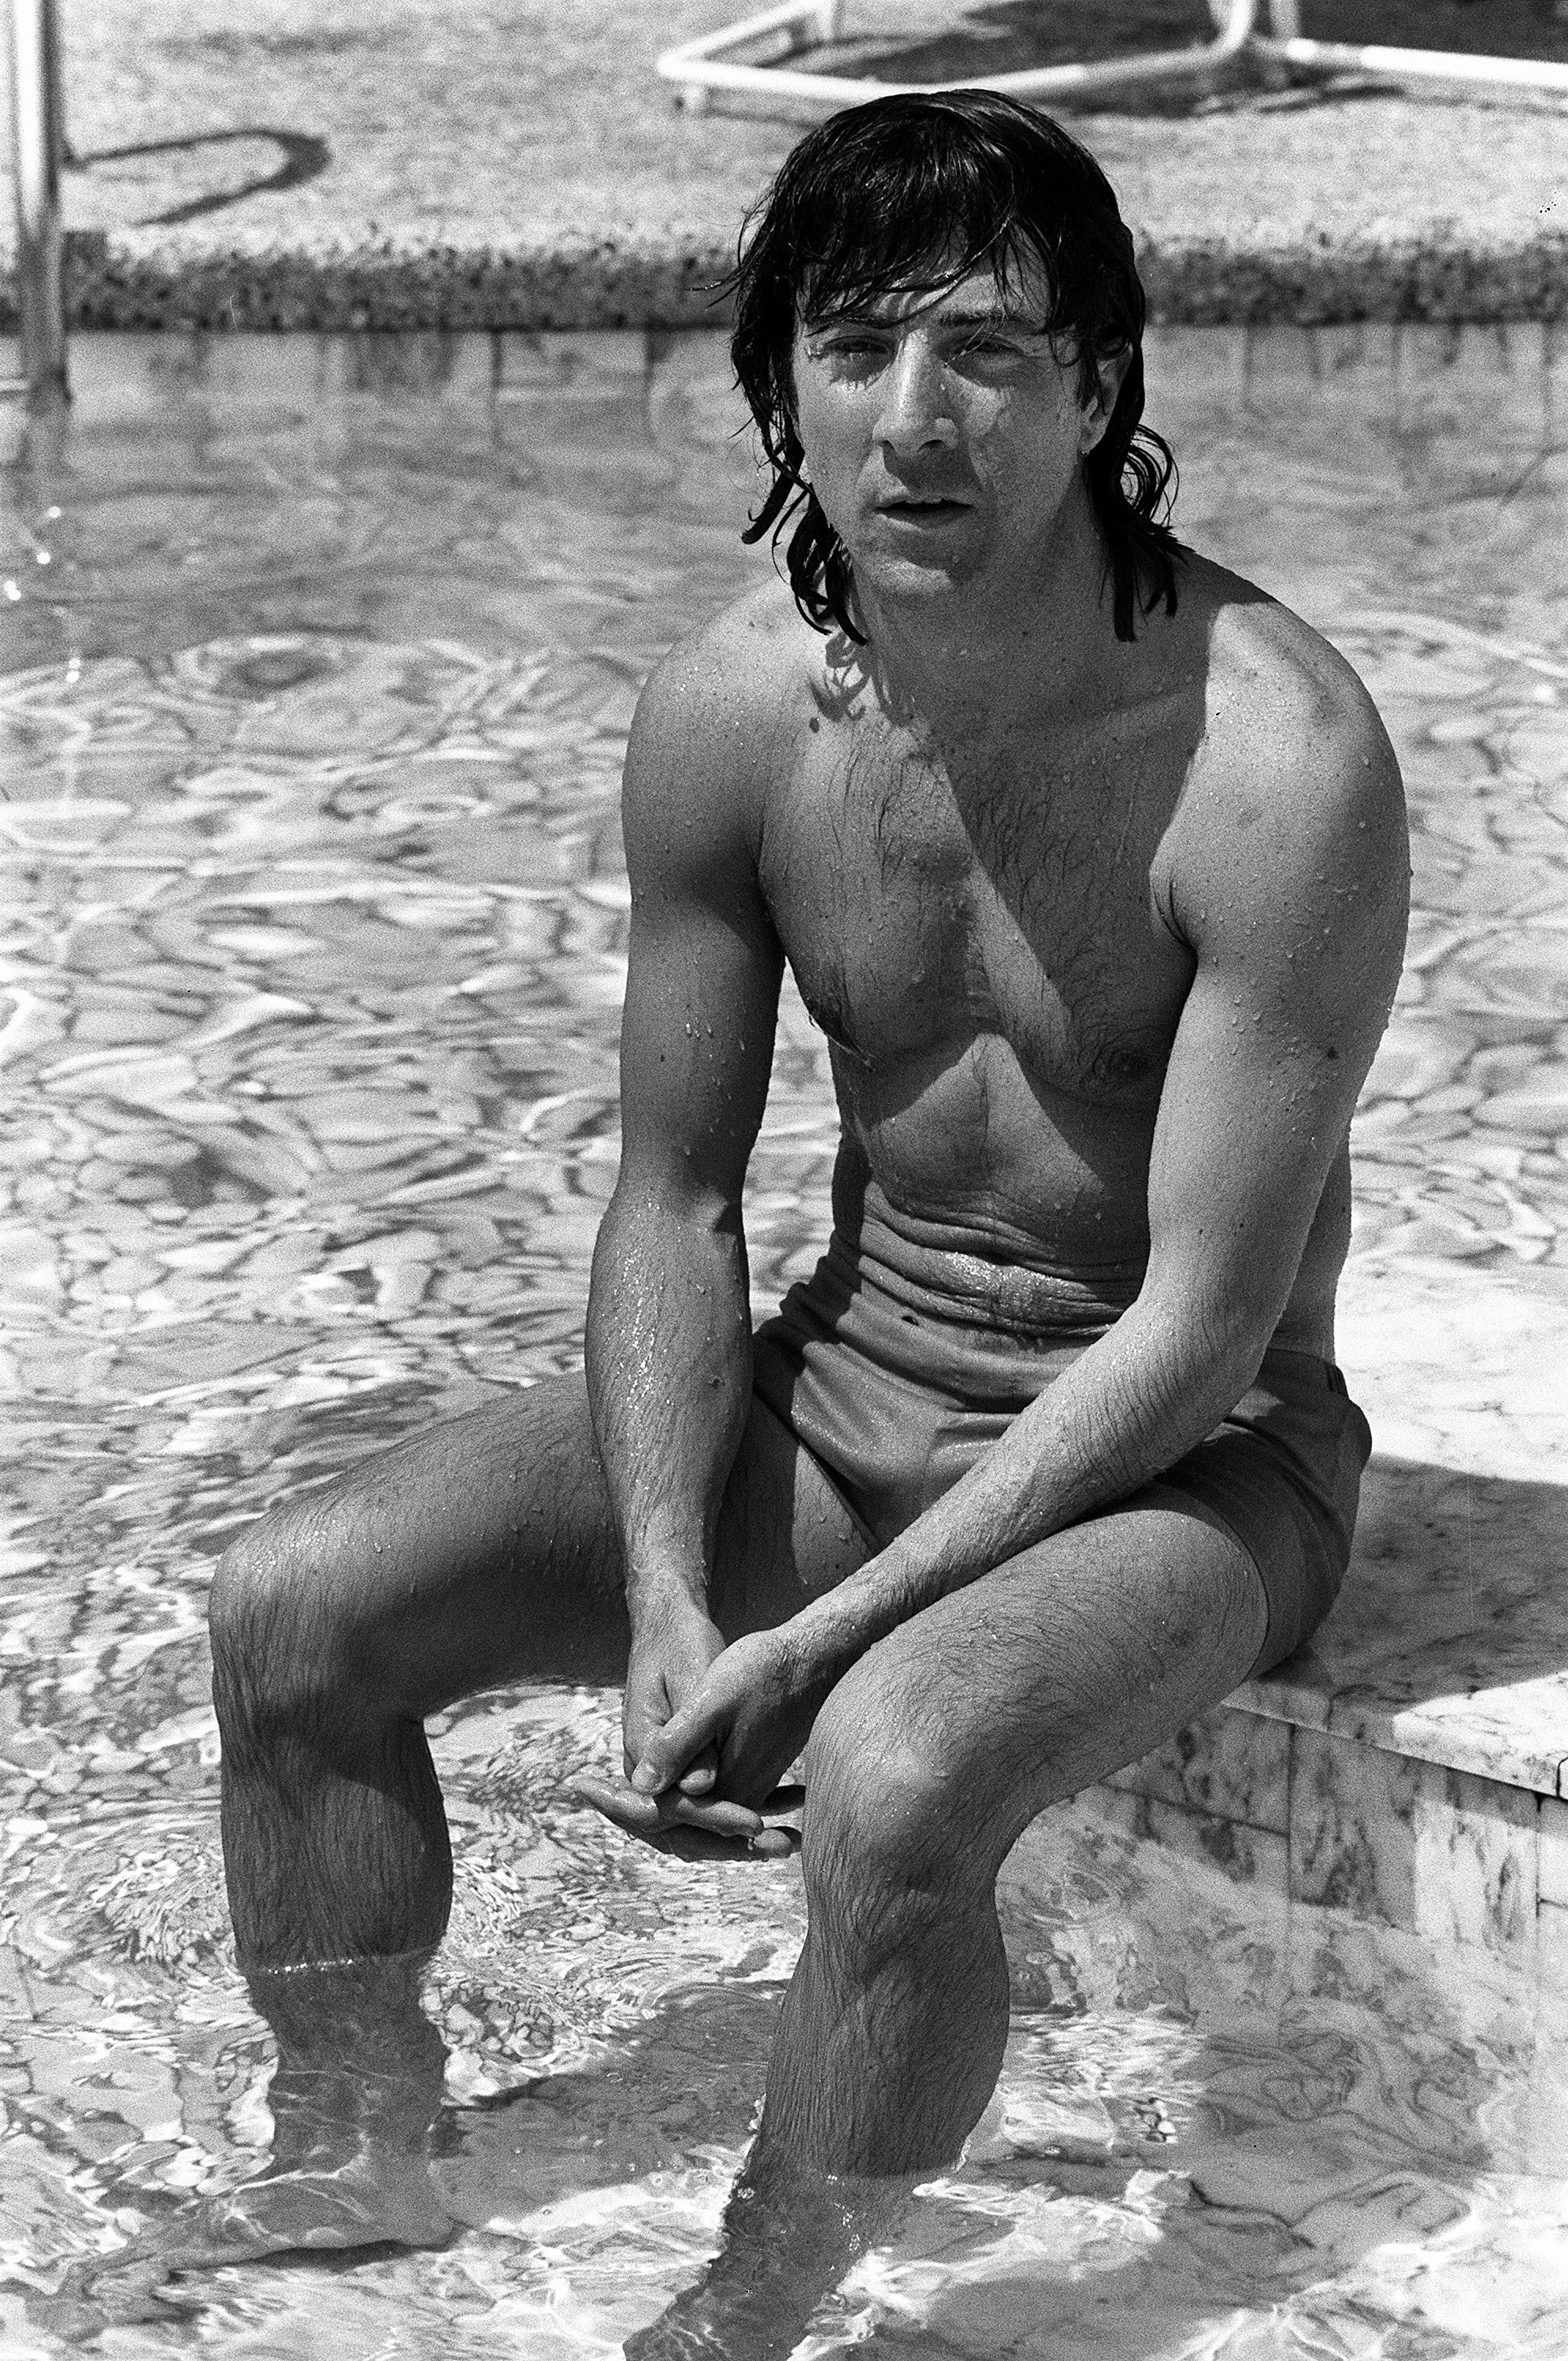 Dustin Hoffman poses in a pool in 1975